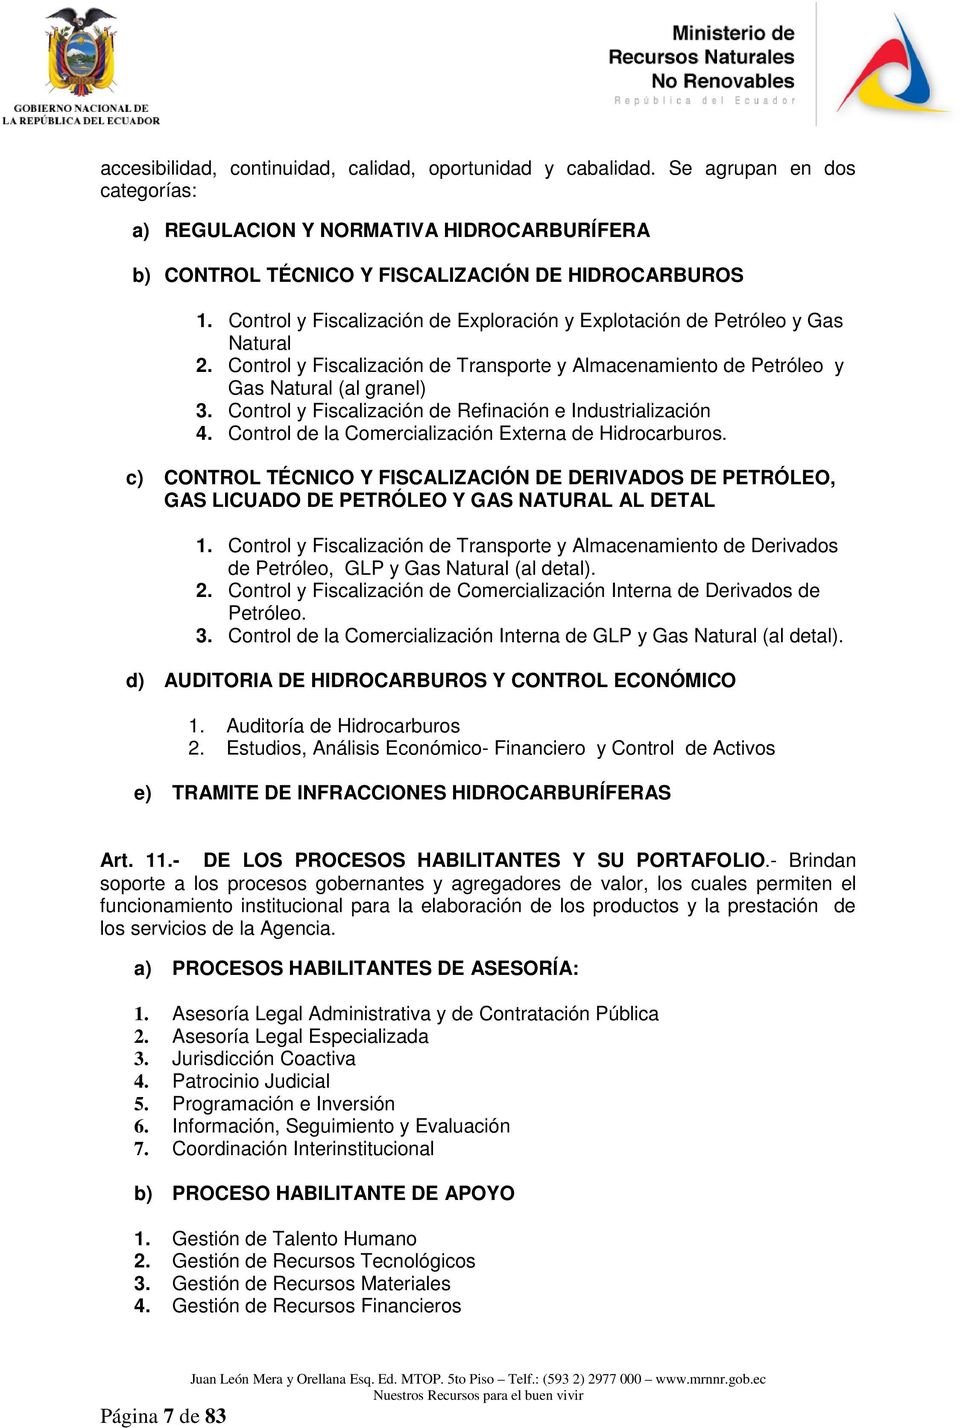 Control y Fiscalización de Refinación e Industrialización 4. Control de la Comercialización Externa de Hidrocarburos.